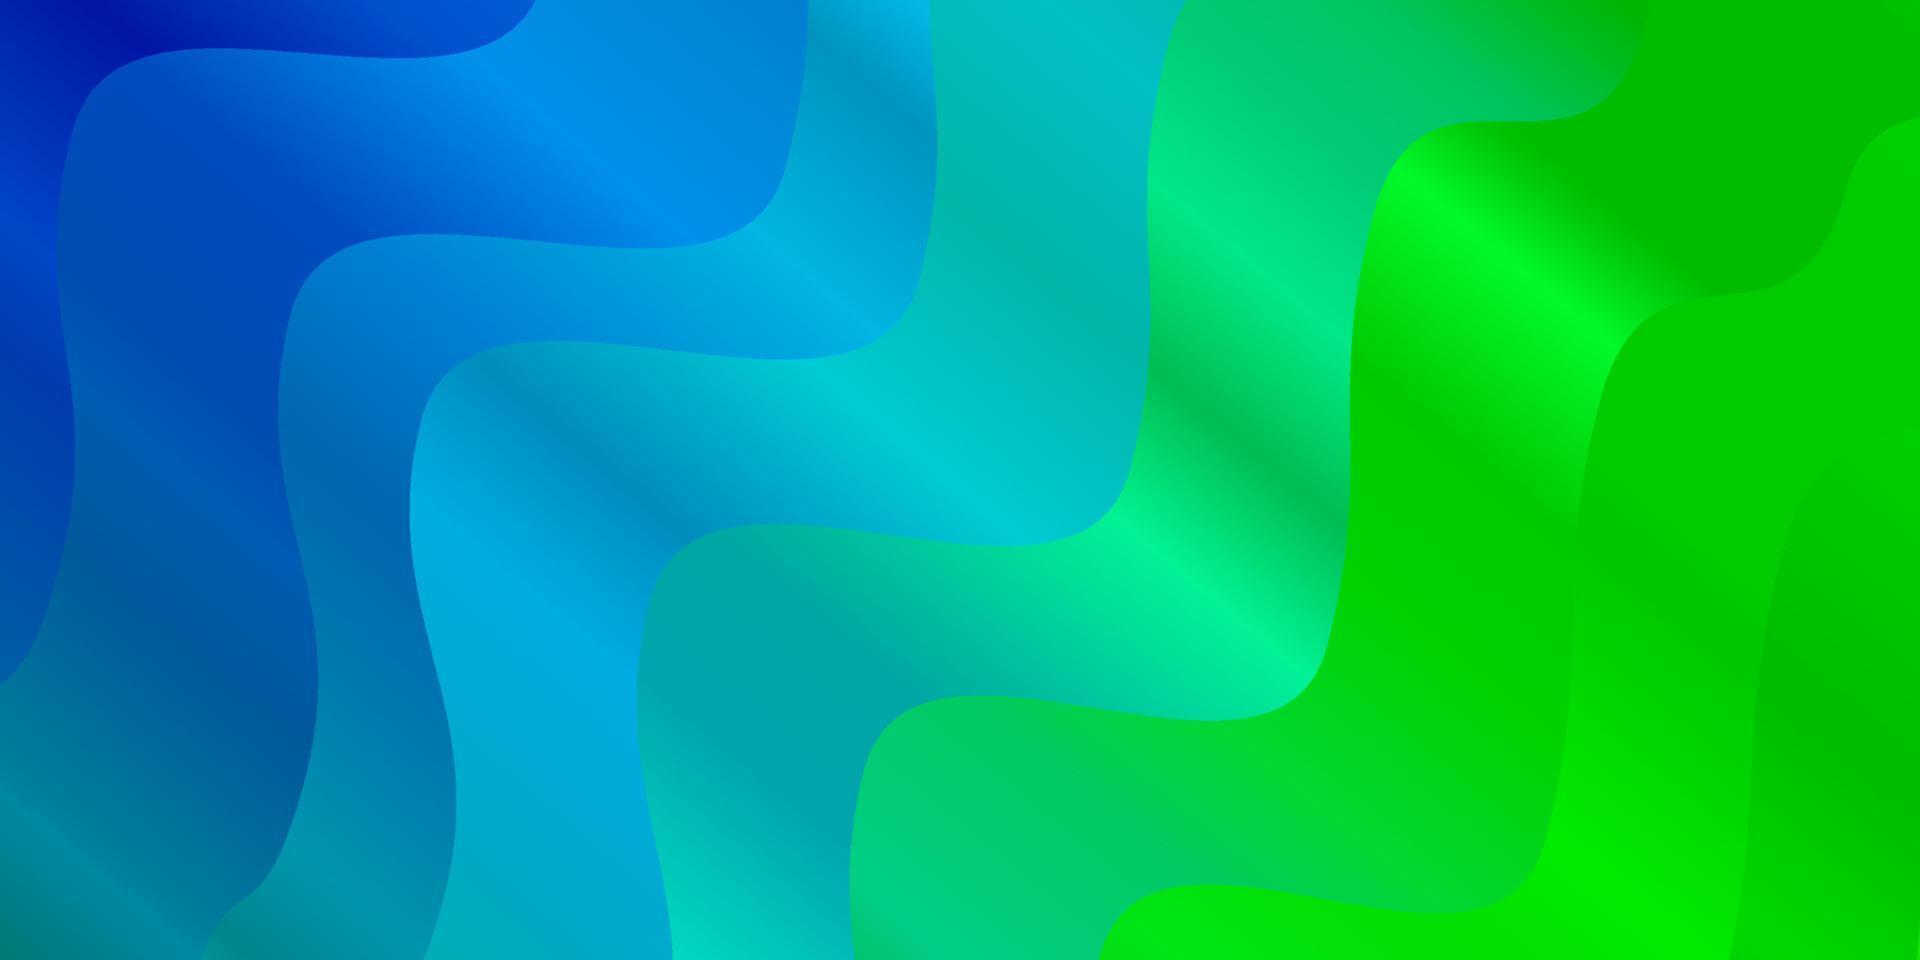 fond de vecteur bleu clair, vert avec des lignes ironiques.